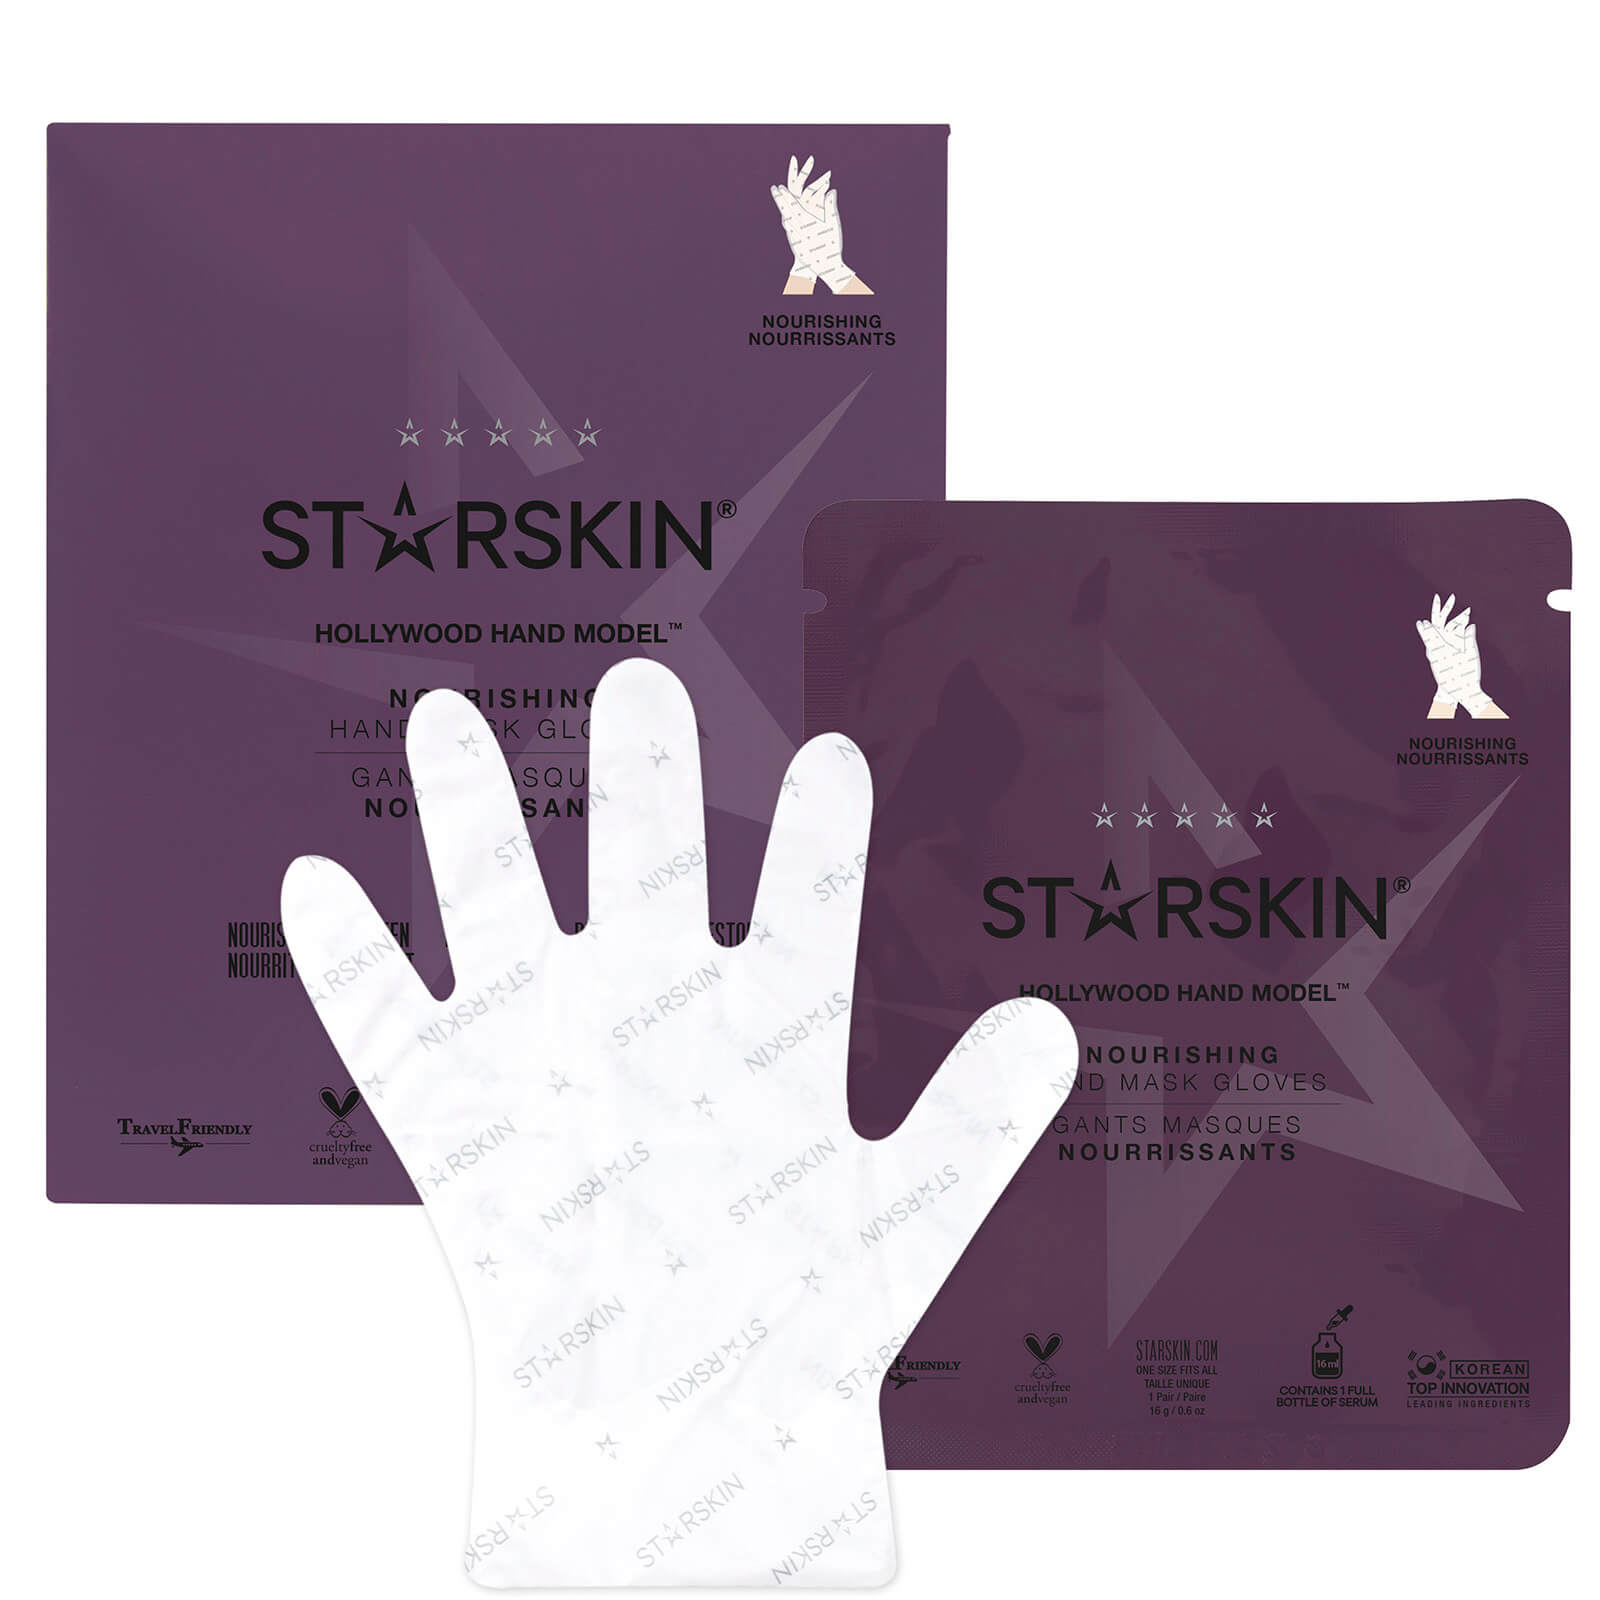 STARSKIN STARSKIN HOLLYWOOD HAND MODEL NOURISHING DOUBLE LAYER HAND MASK GLOVES